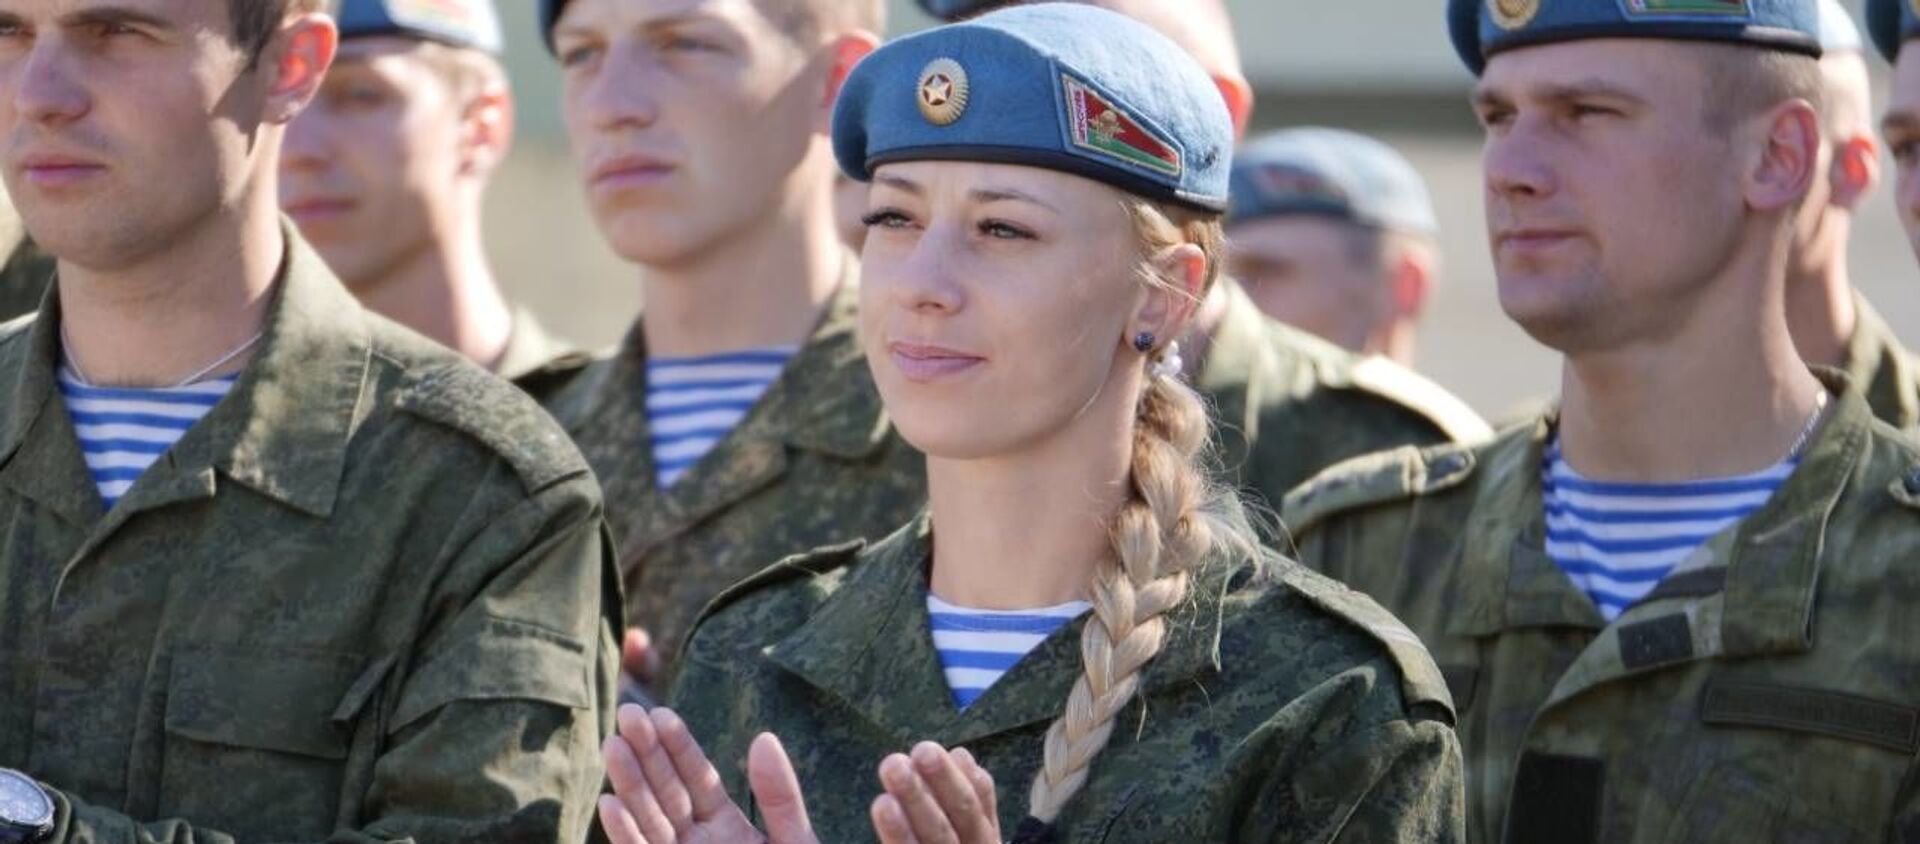 Вся жизнь Натальи  в основном проходит в армейской форме, зато голубой берет очень подходит под цвет глаз  - Sputnik Беларусь, 1920, 02.08.2019